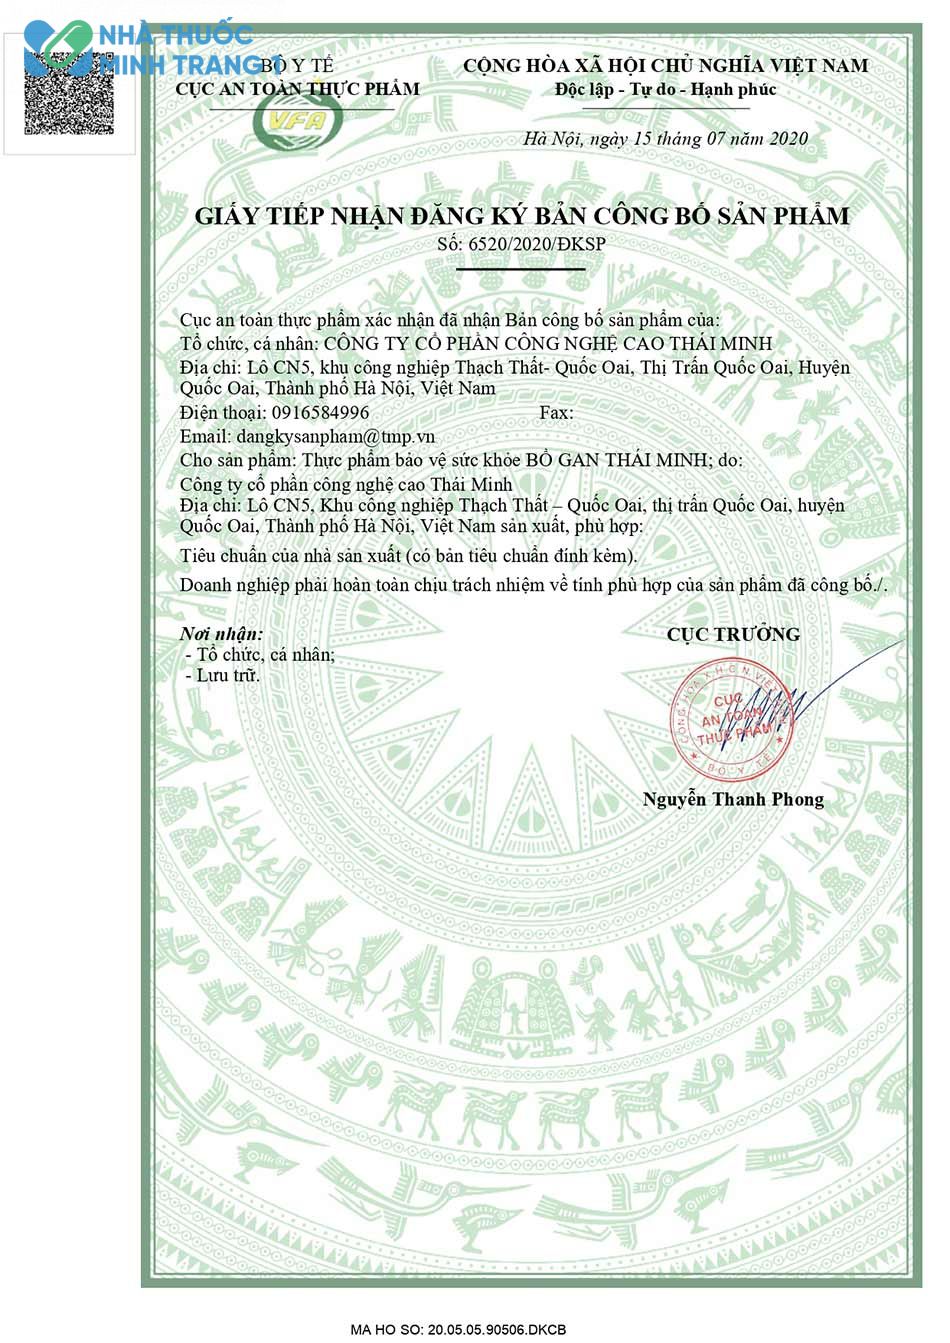 Hình ảnh giấy tiếp nhận đăng ký bản công bố sản phẩm Bổ gan Thái Minh